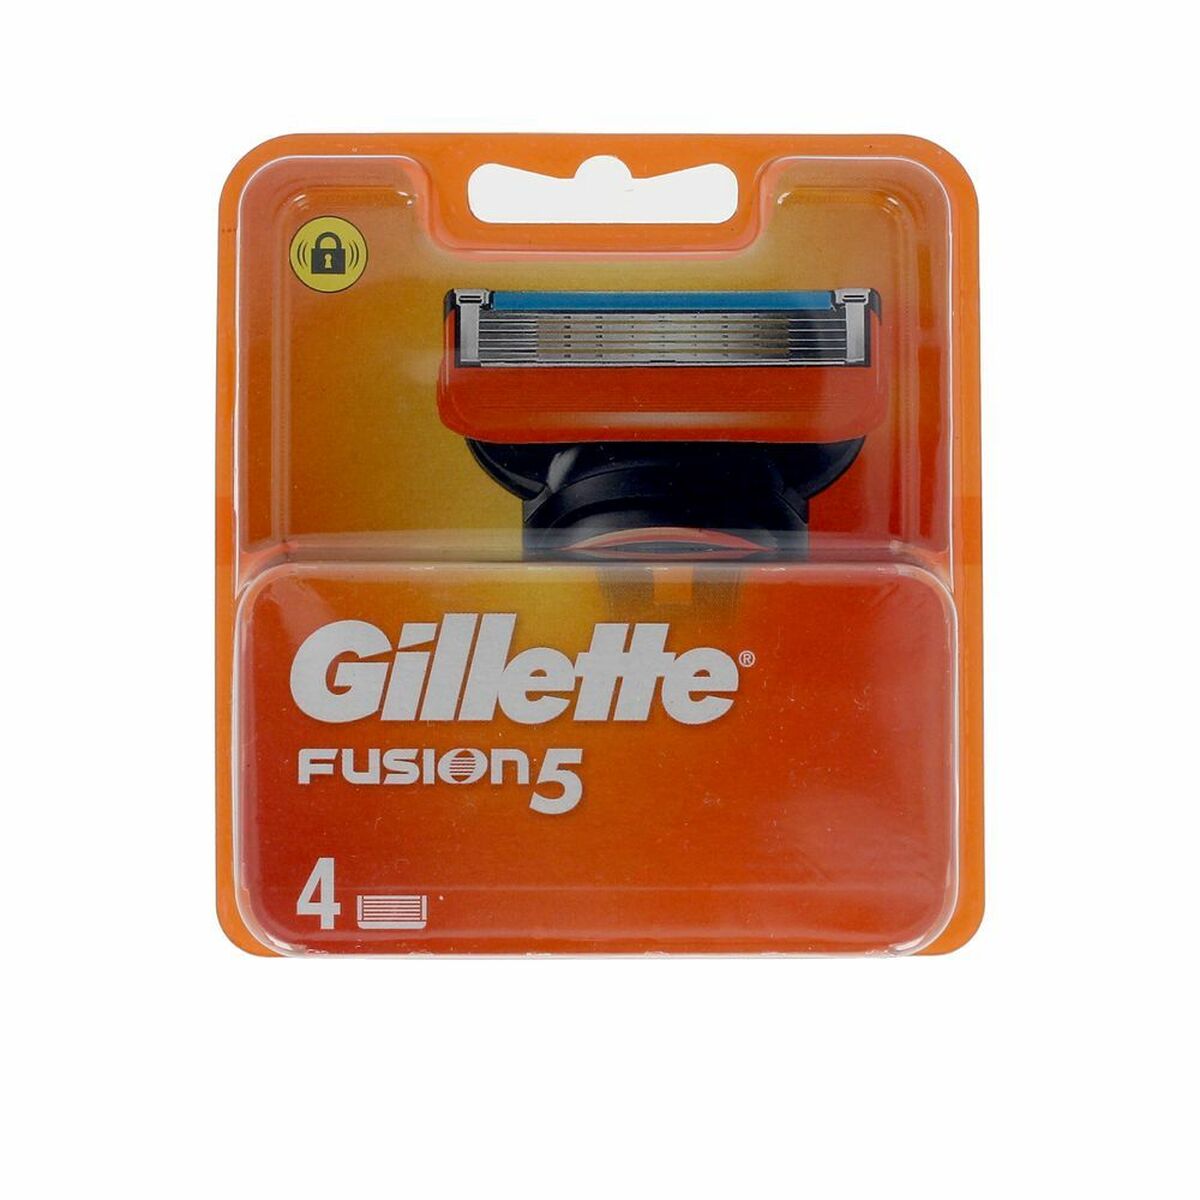 Hervulling Scheermesjes Gillette Fusion 5 (4 uds)